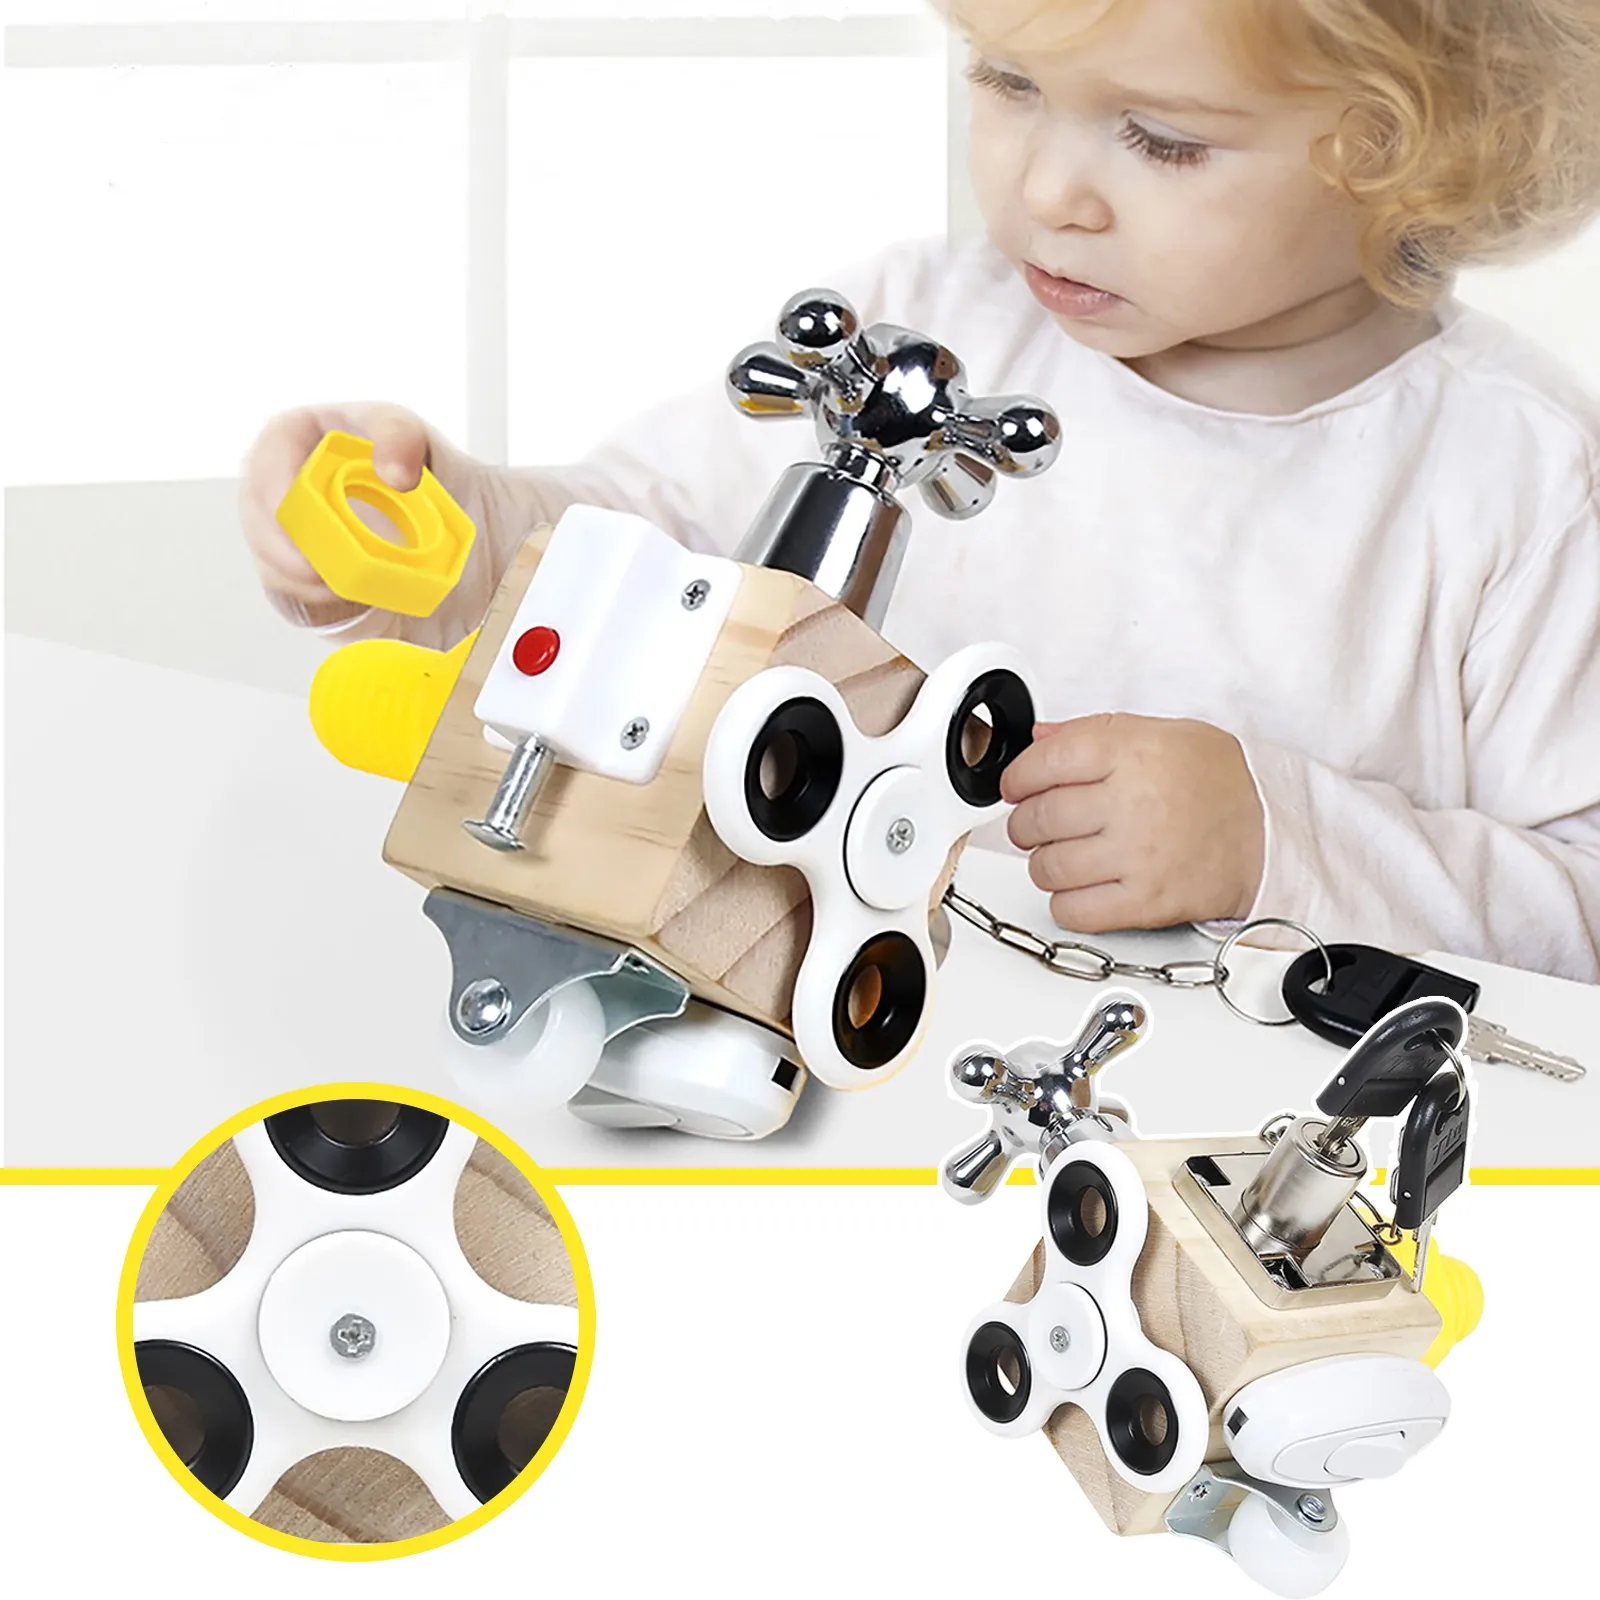 

Игрушка Монтессори для раннего развития детей, 1 шт., кубики для снятия стресса и занятий активностью, подарок для родителей и детей, интерак...